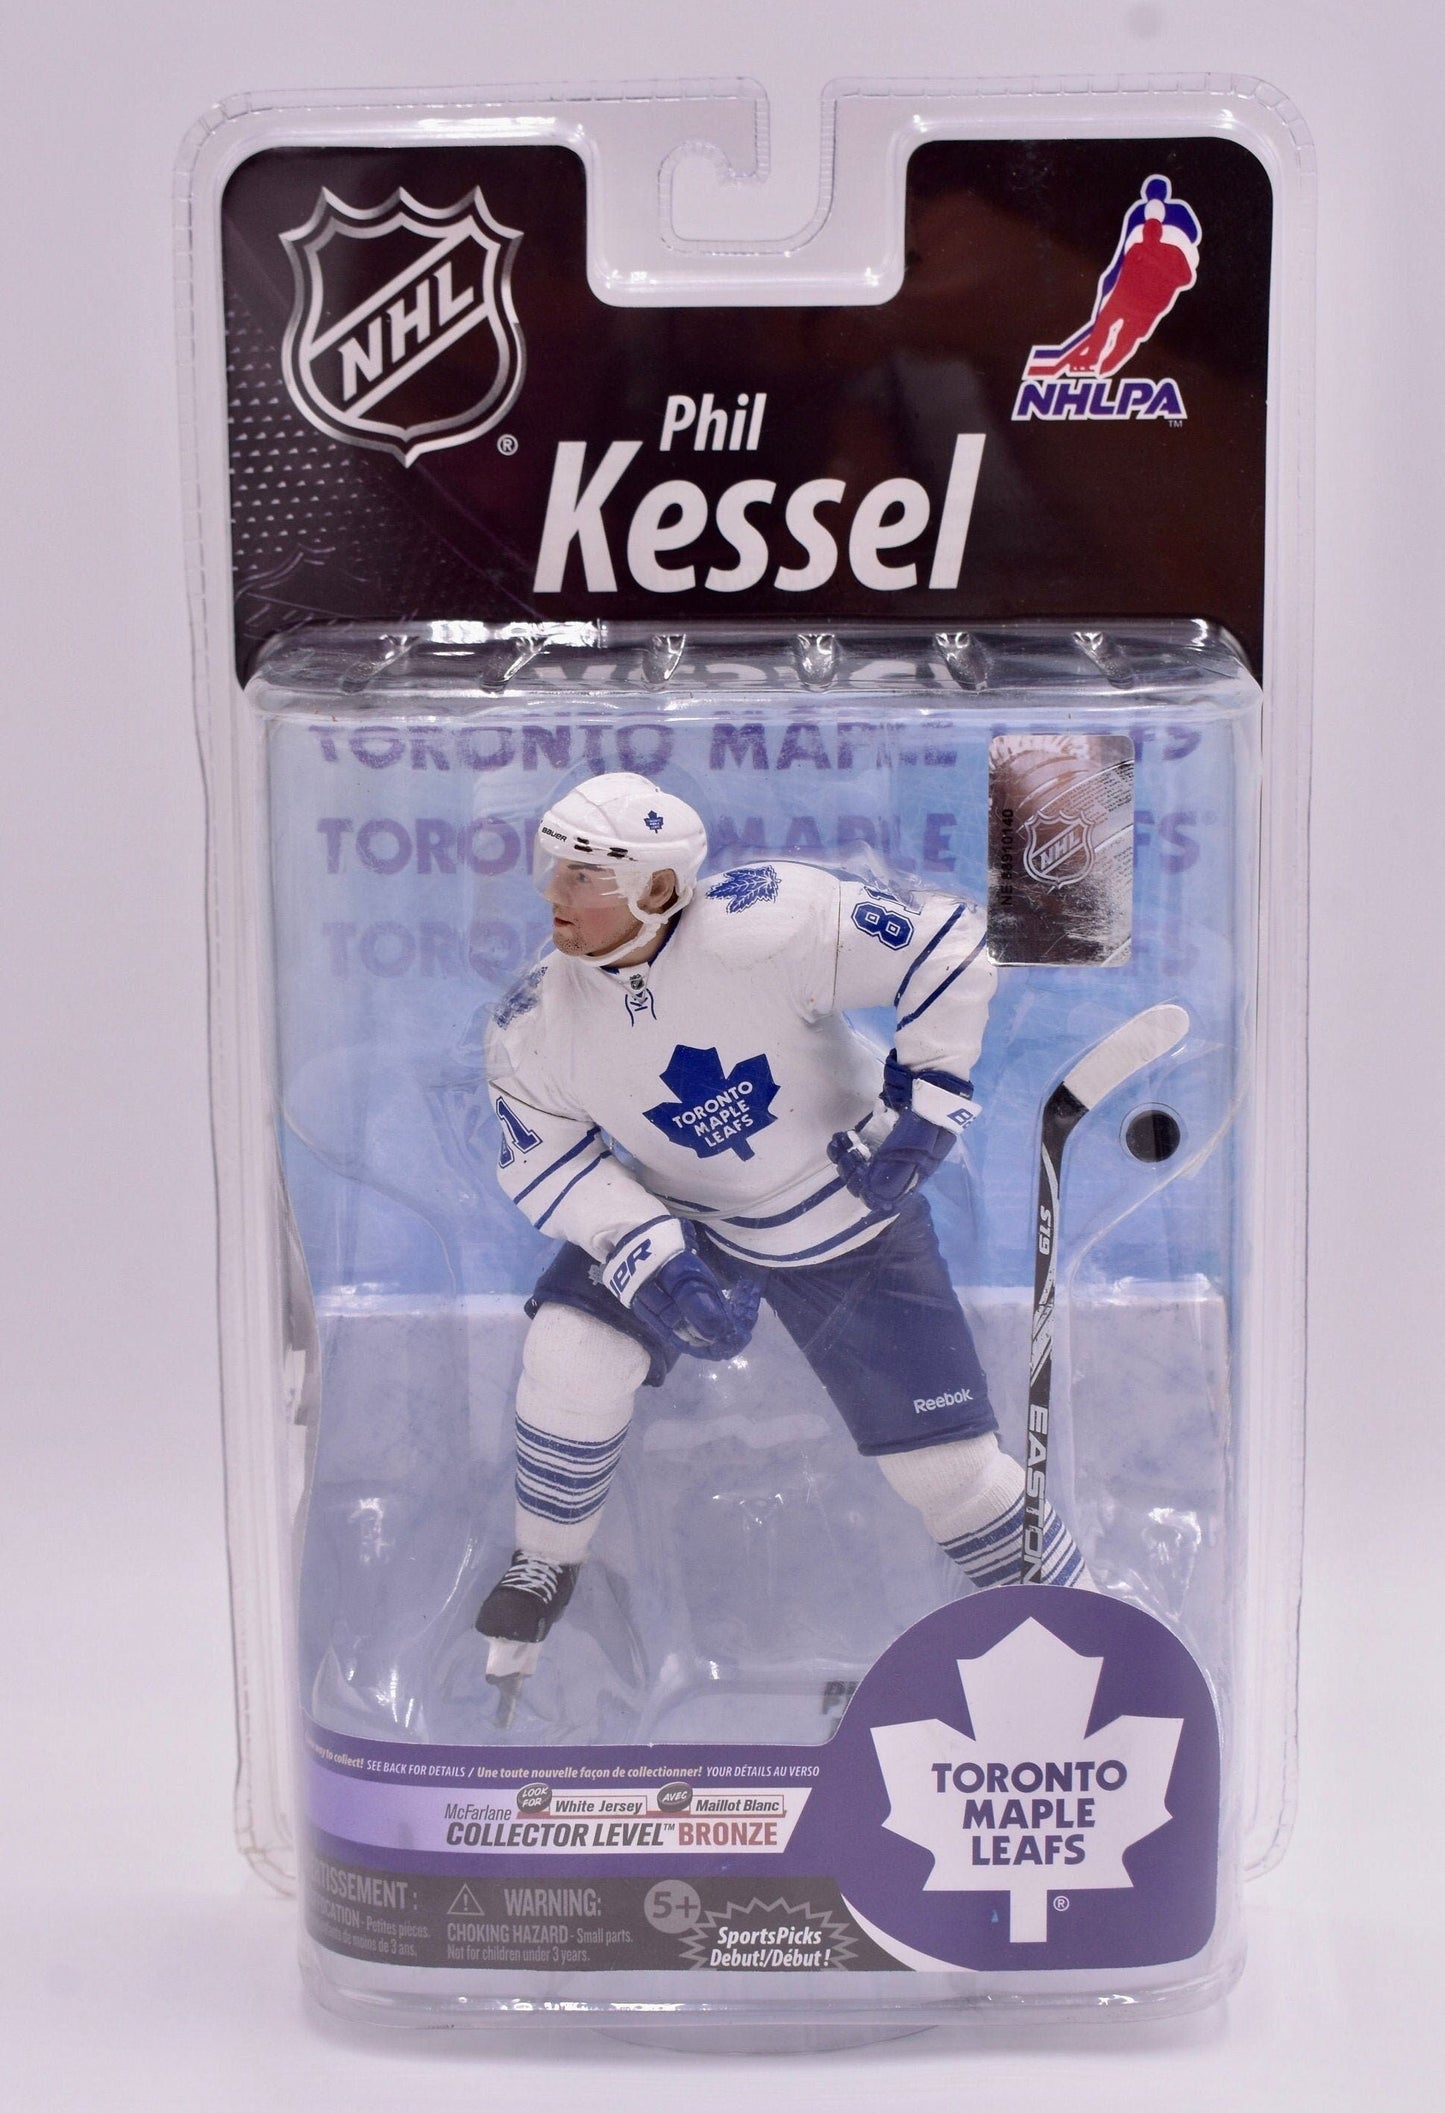 McFarlane Hockey Action Figure Toronto Maple Leafs Phil Kessel